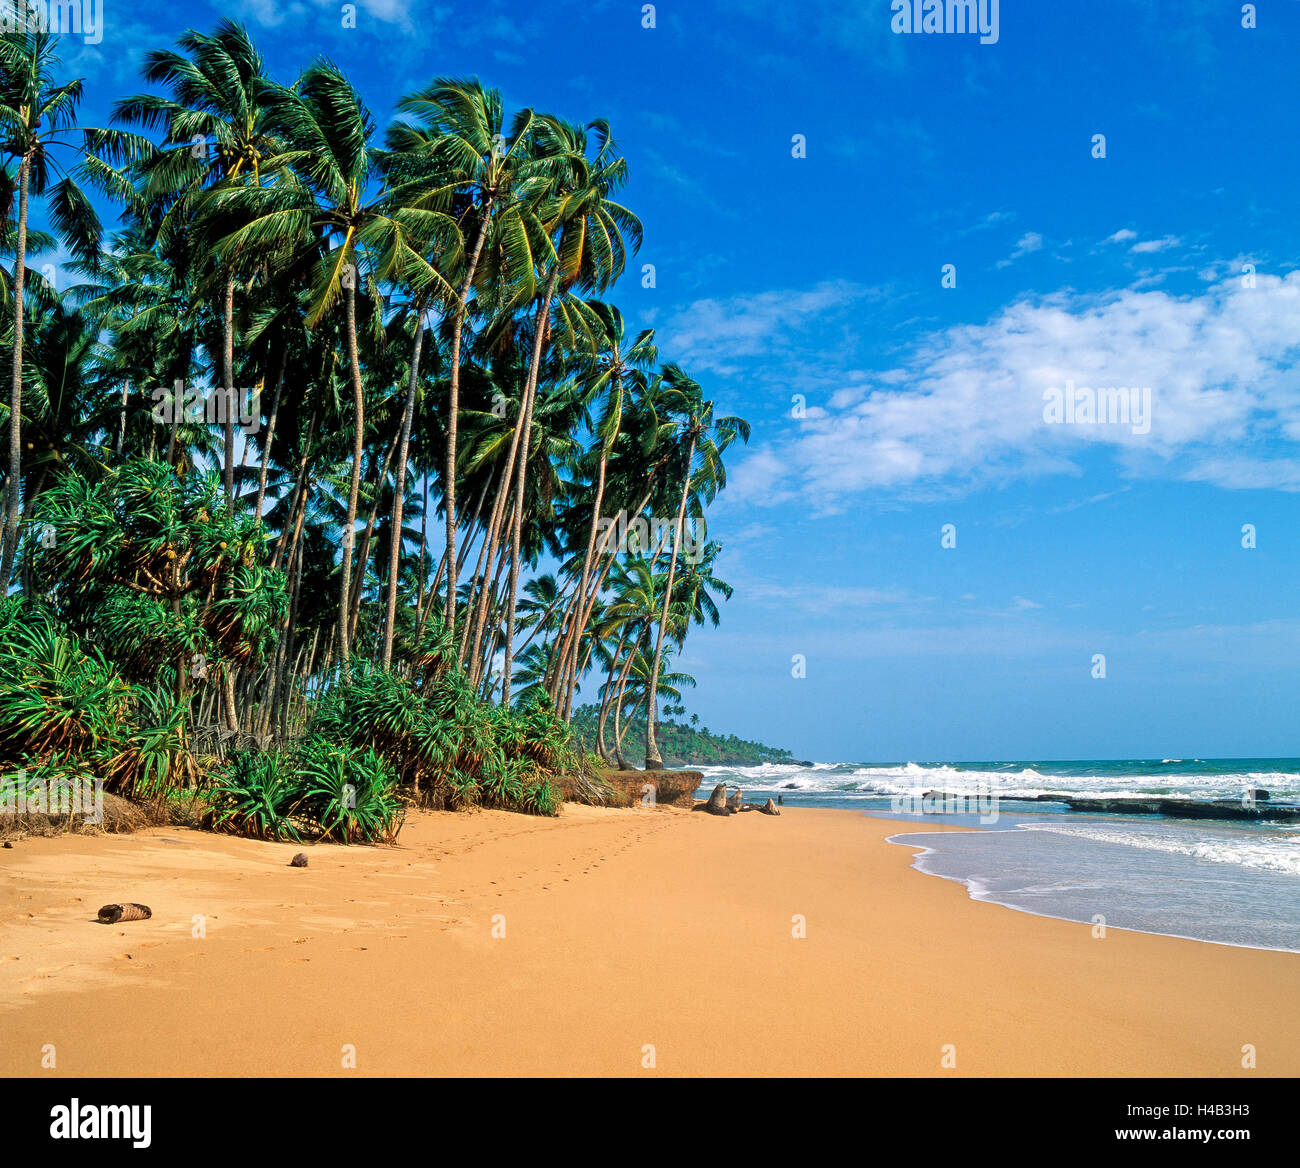 Palm Beach, plage de sable de rêve, de l'Océan indien, restent à découvrir, paradis de vacances Banque D'Images